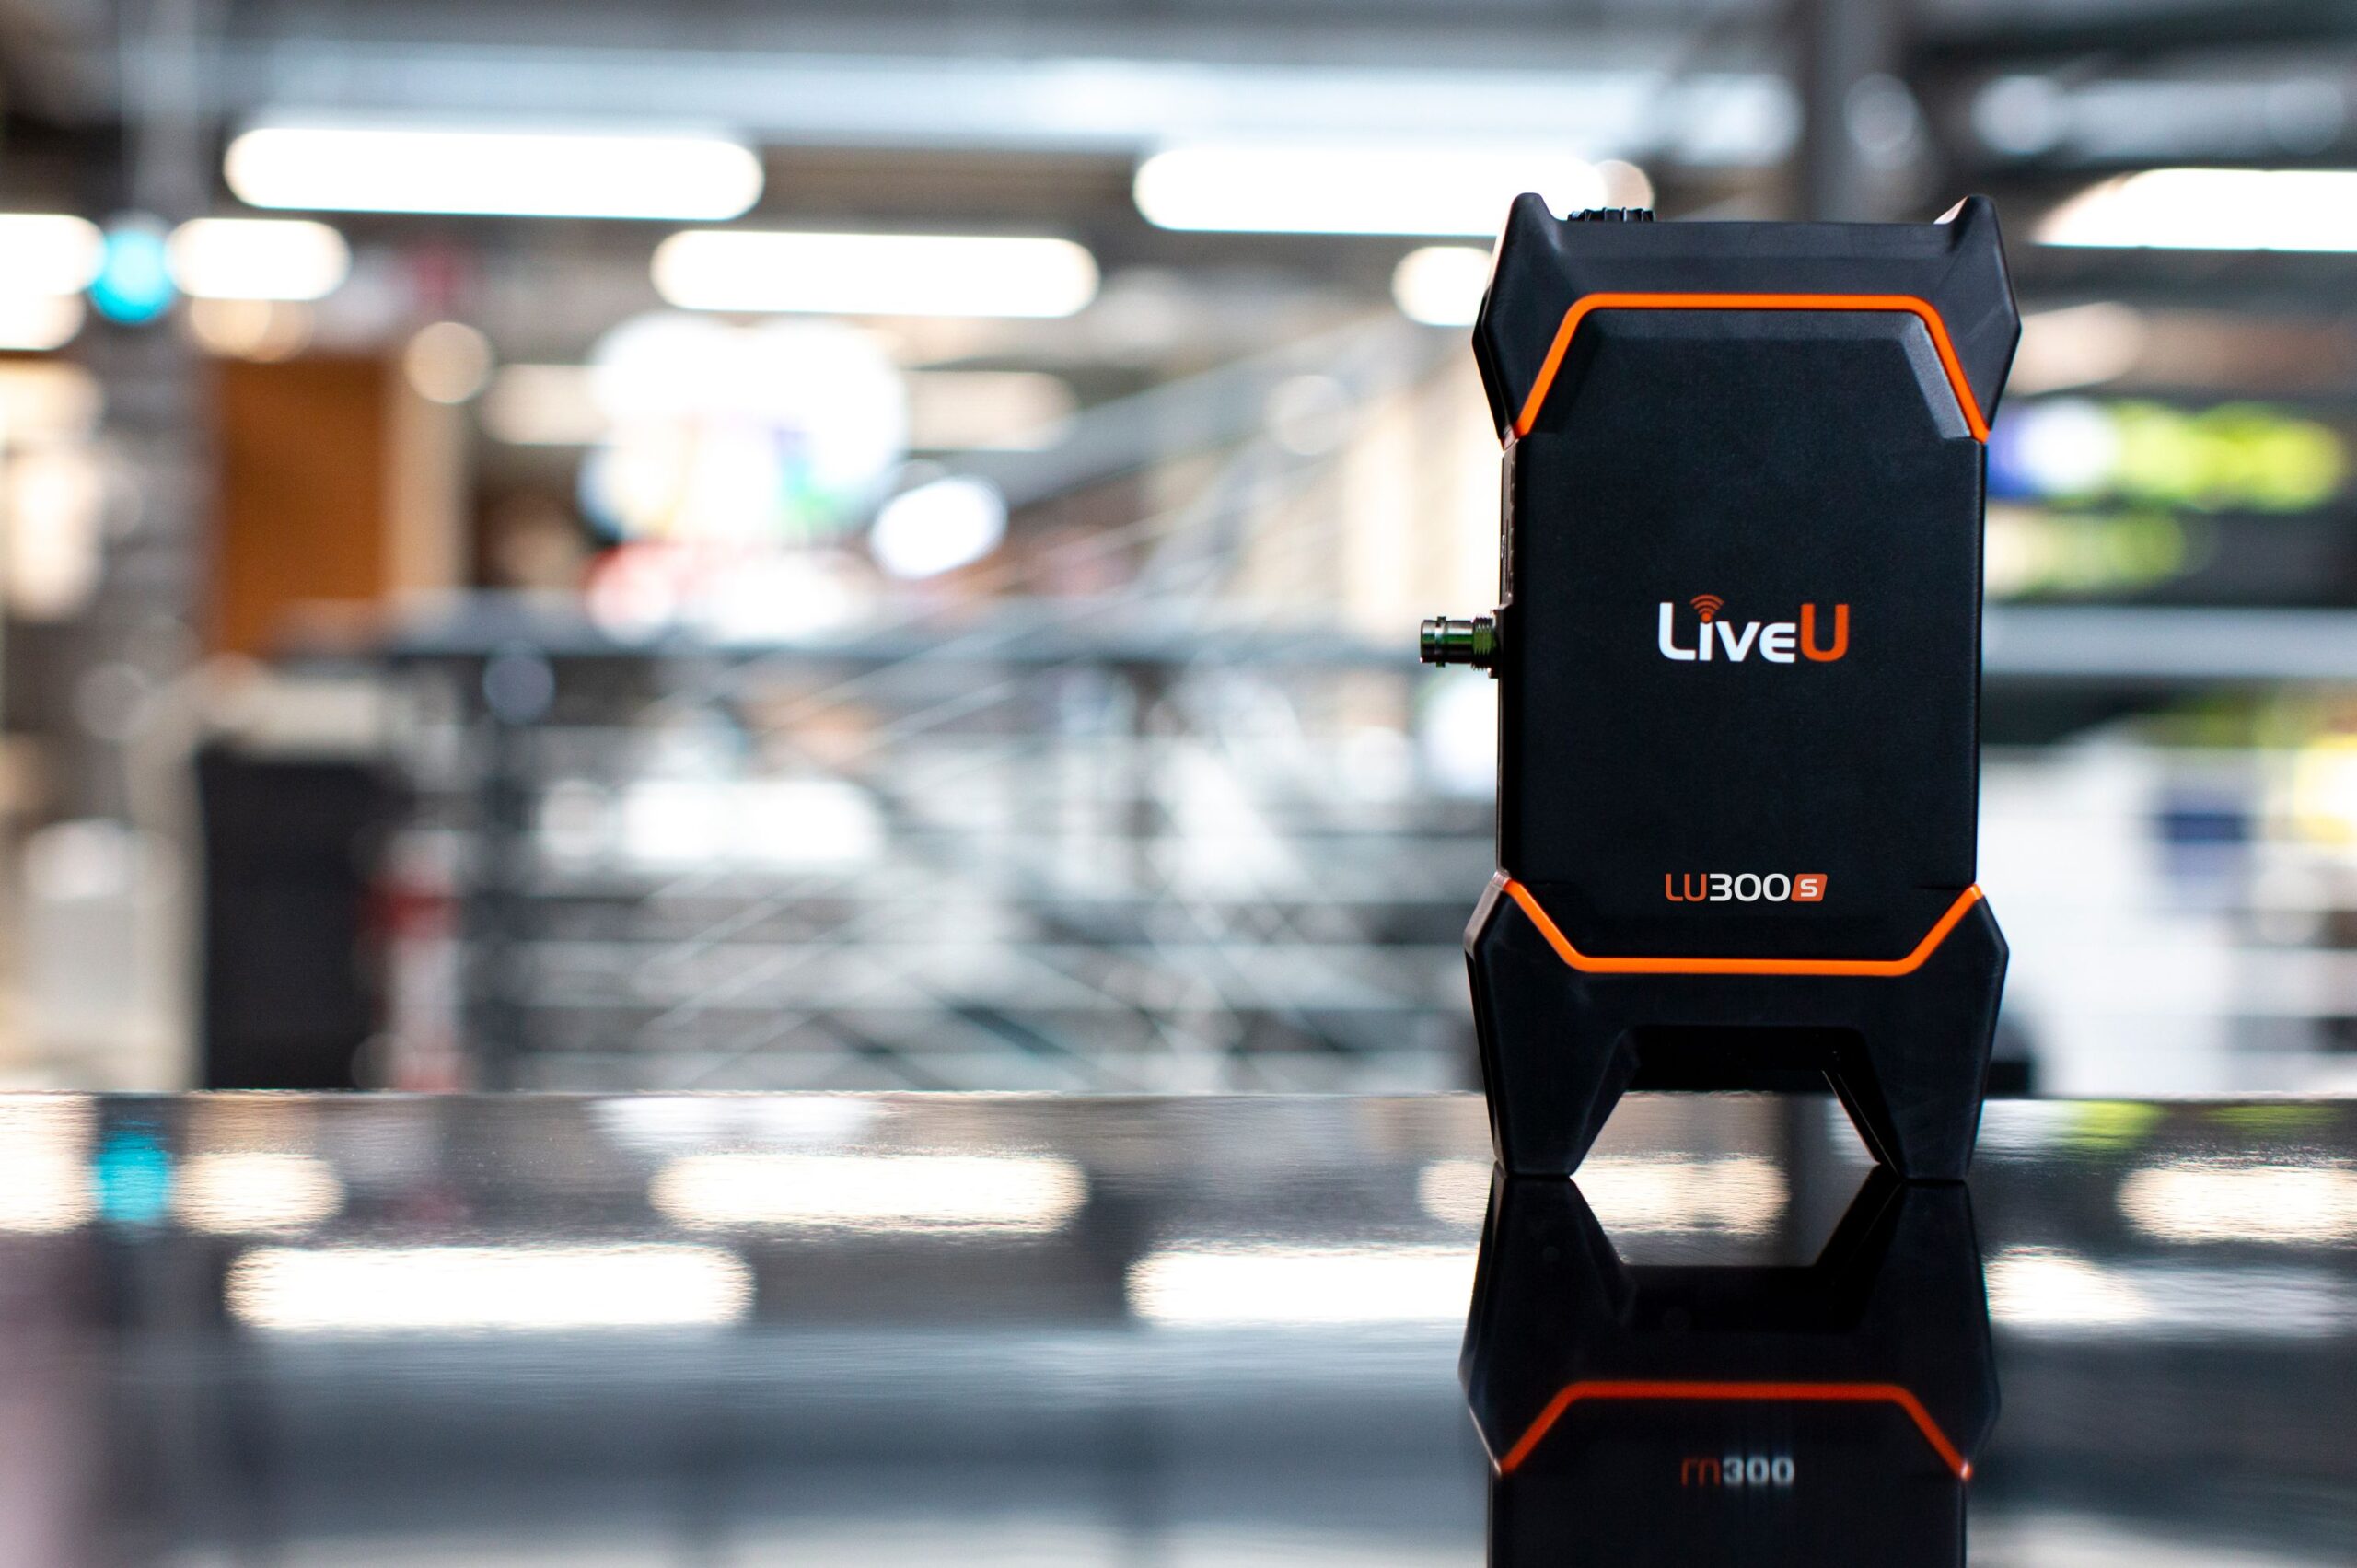 LiveU stellt die neue LU300S vor, die kompakte und mobile 5G-Übertragungslösung für 4K 10-Bit HDR High-Quality Videos